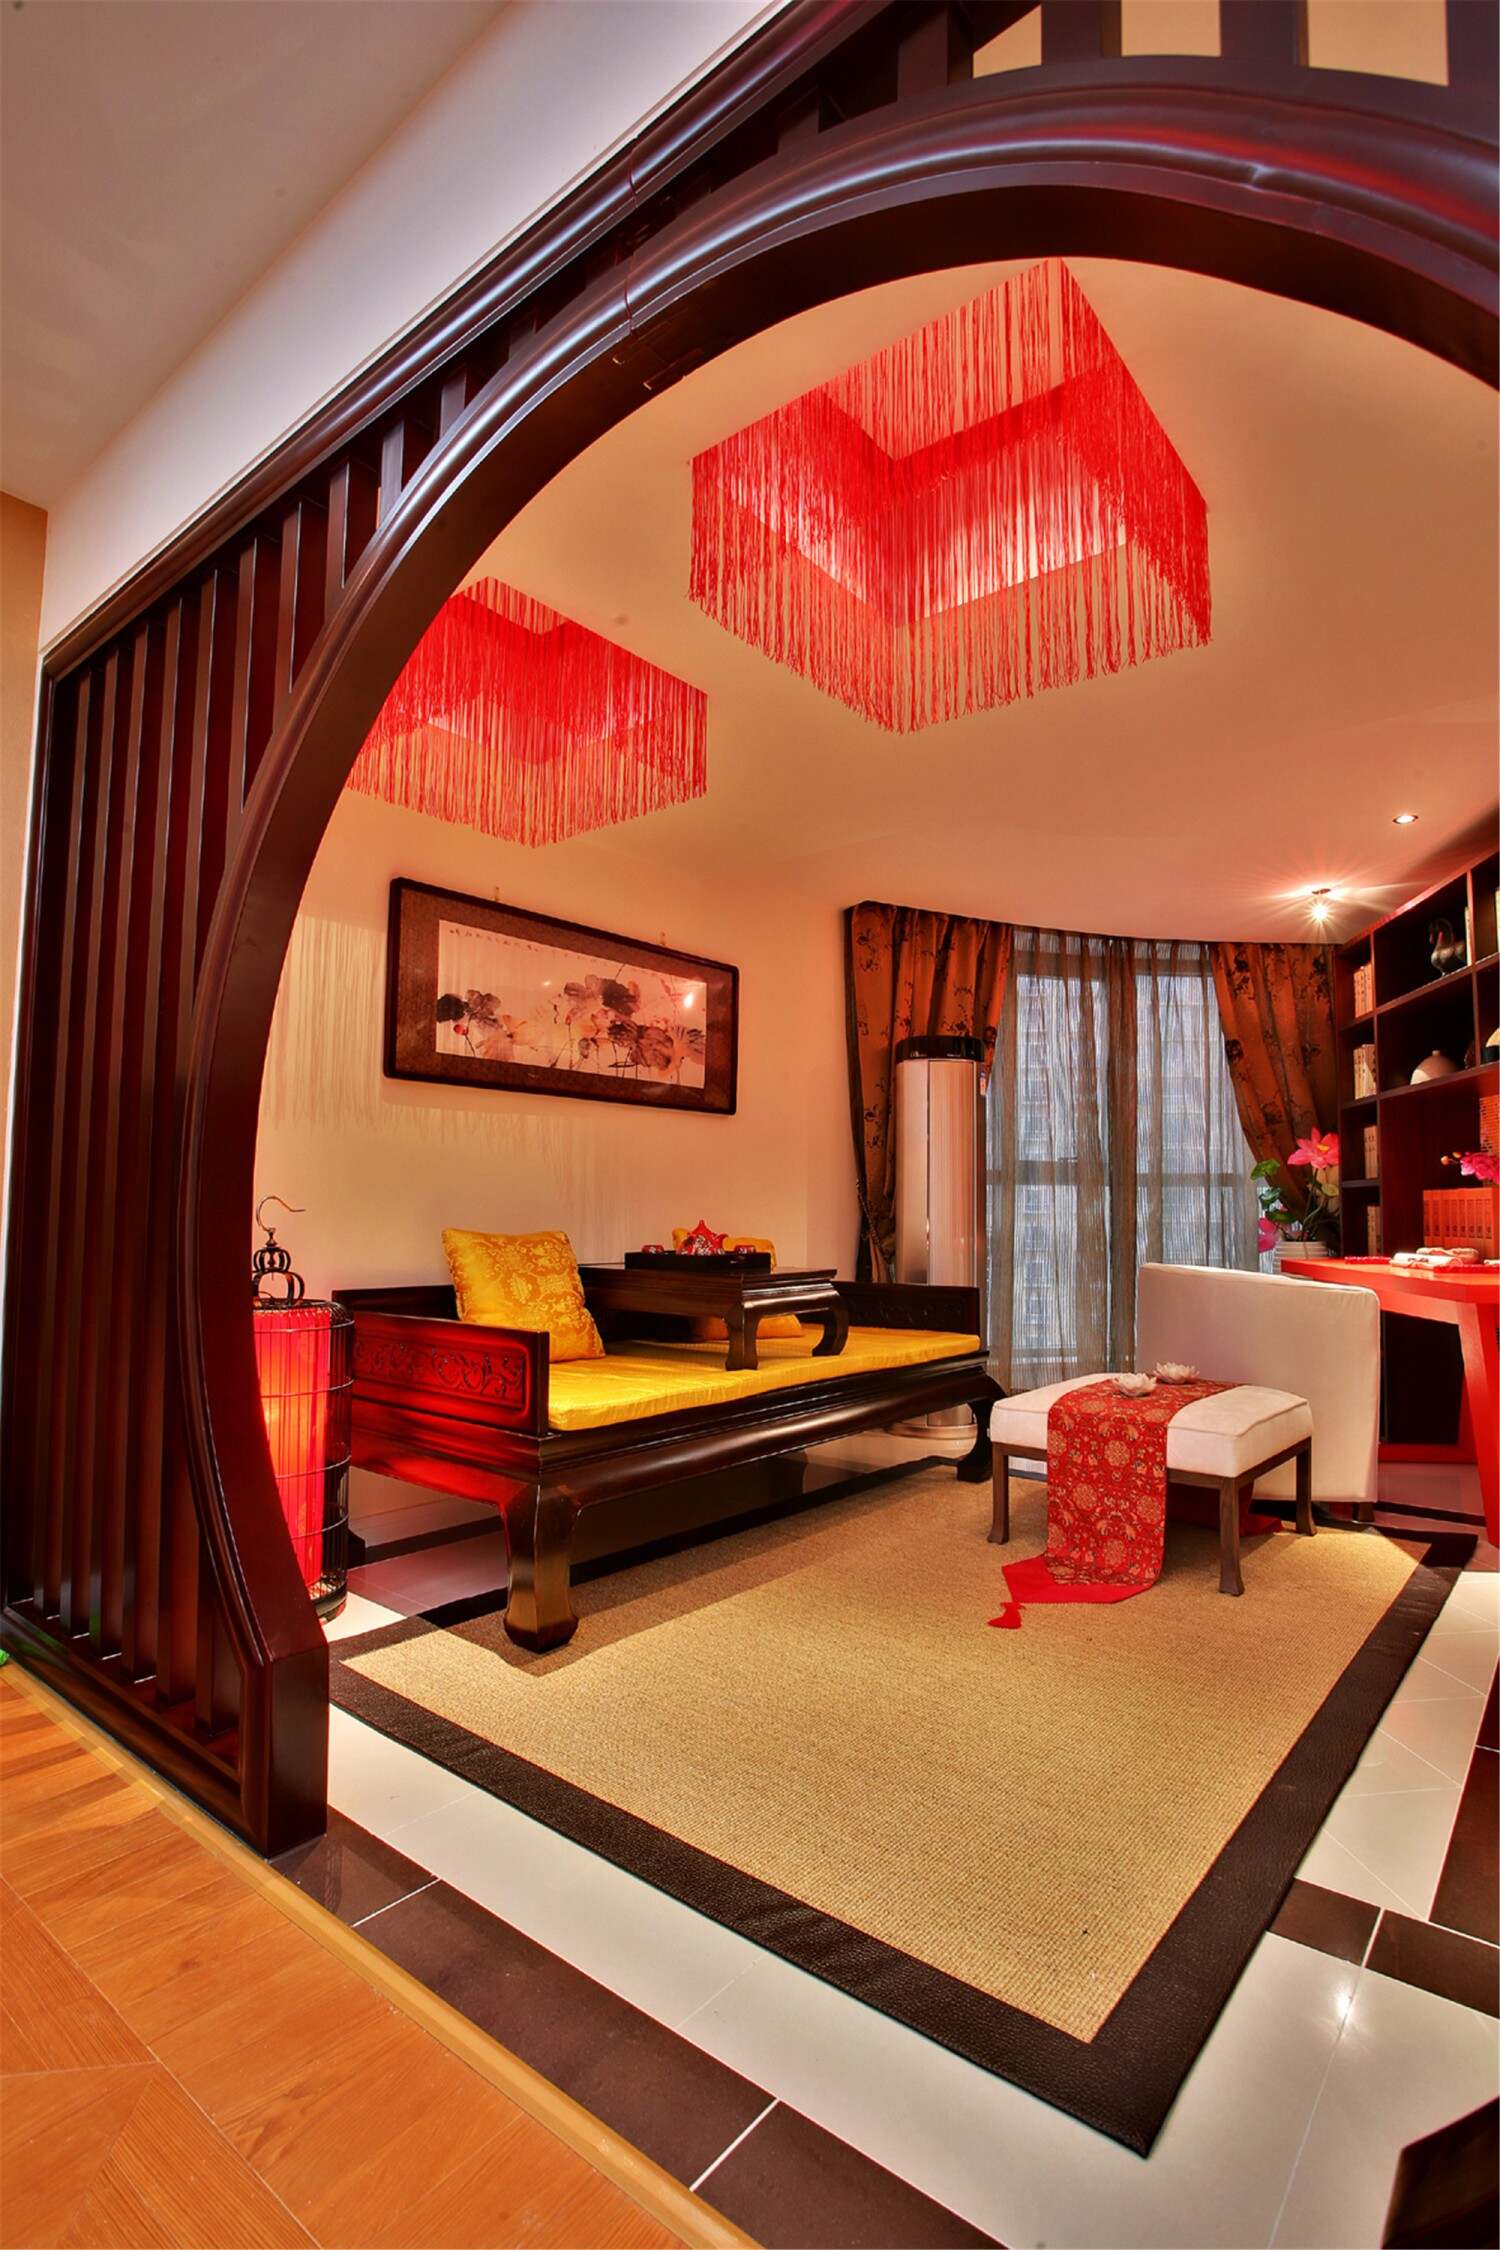 西山林语-新中式 - 中式风格两室一厅装修效果图 - 邹尛攀设计效果图 - 躺平设计家